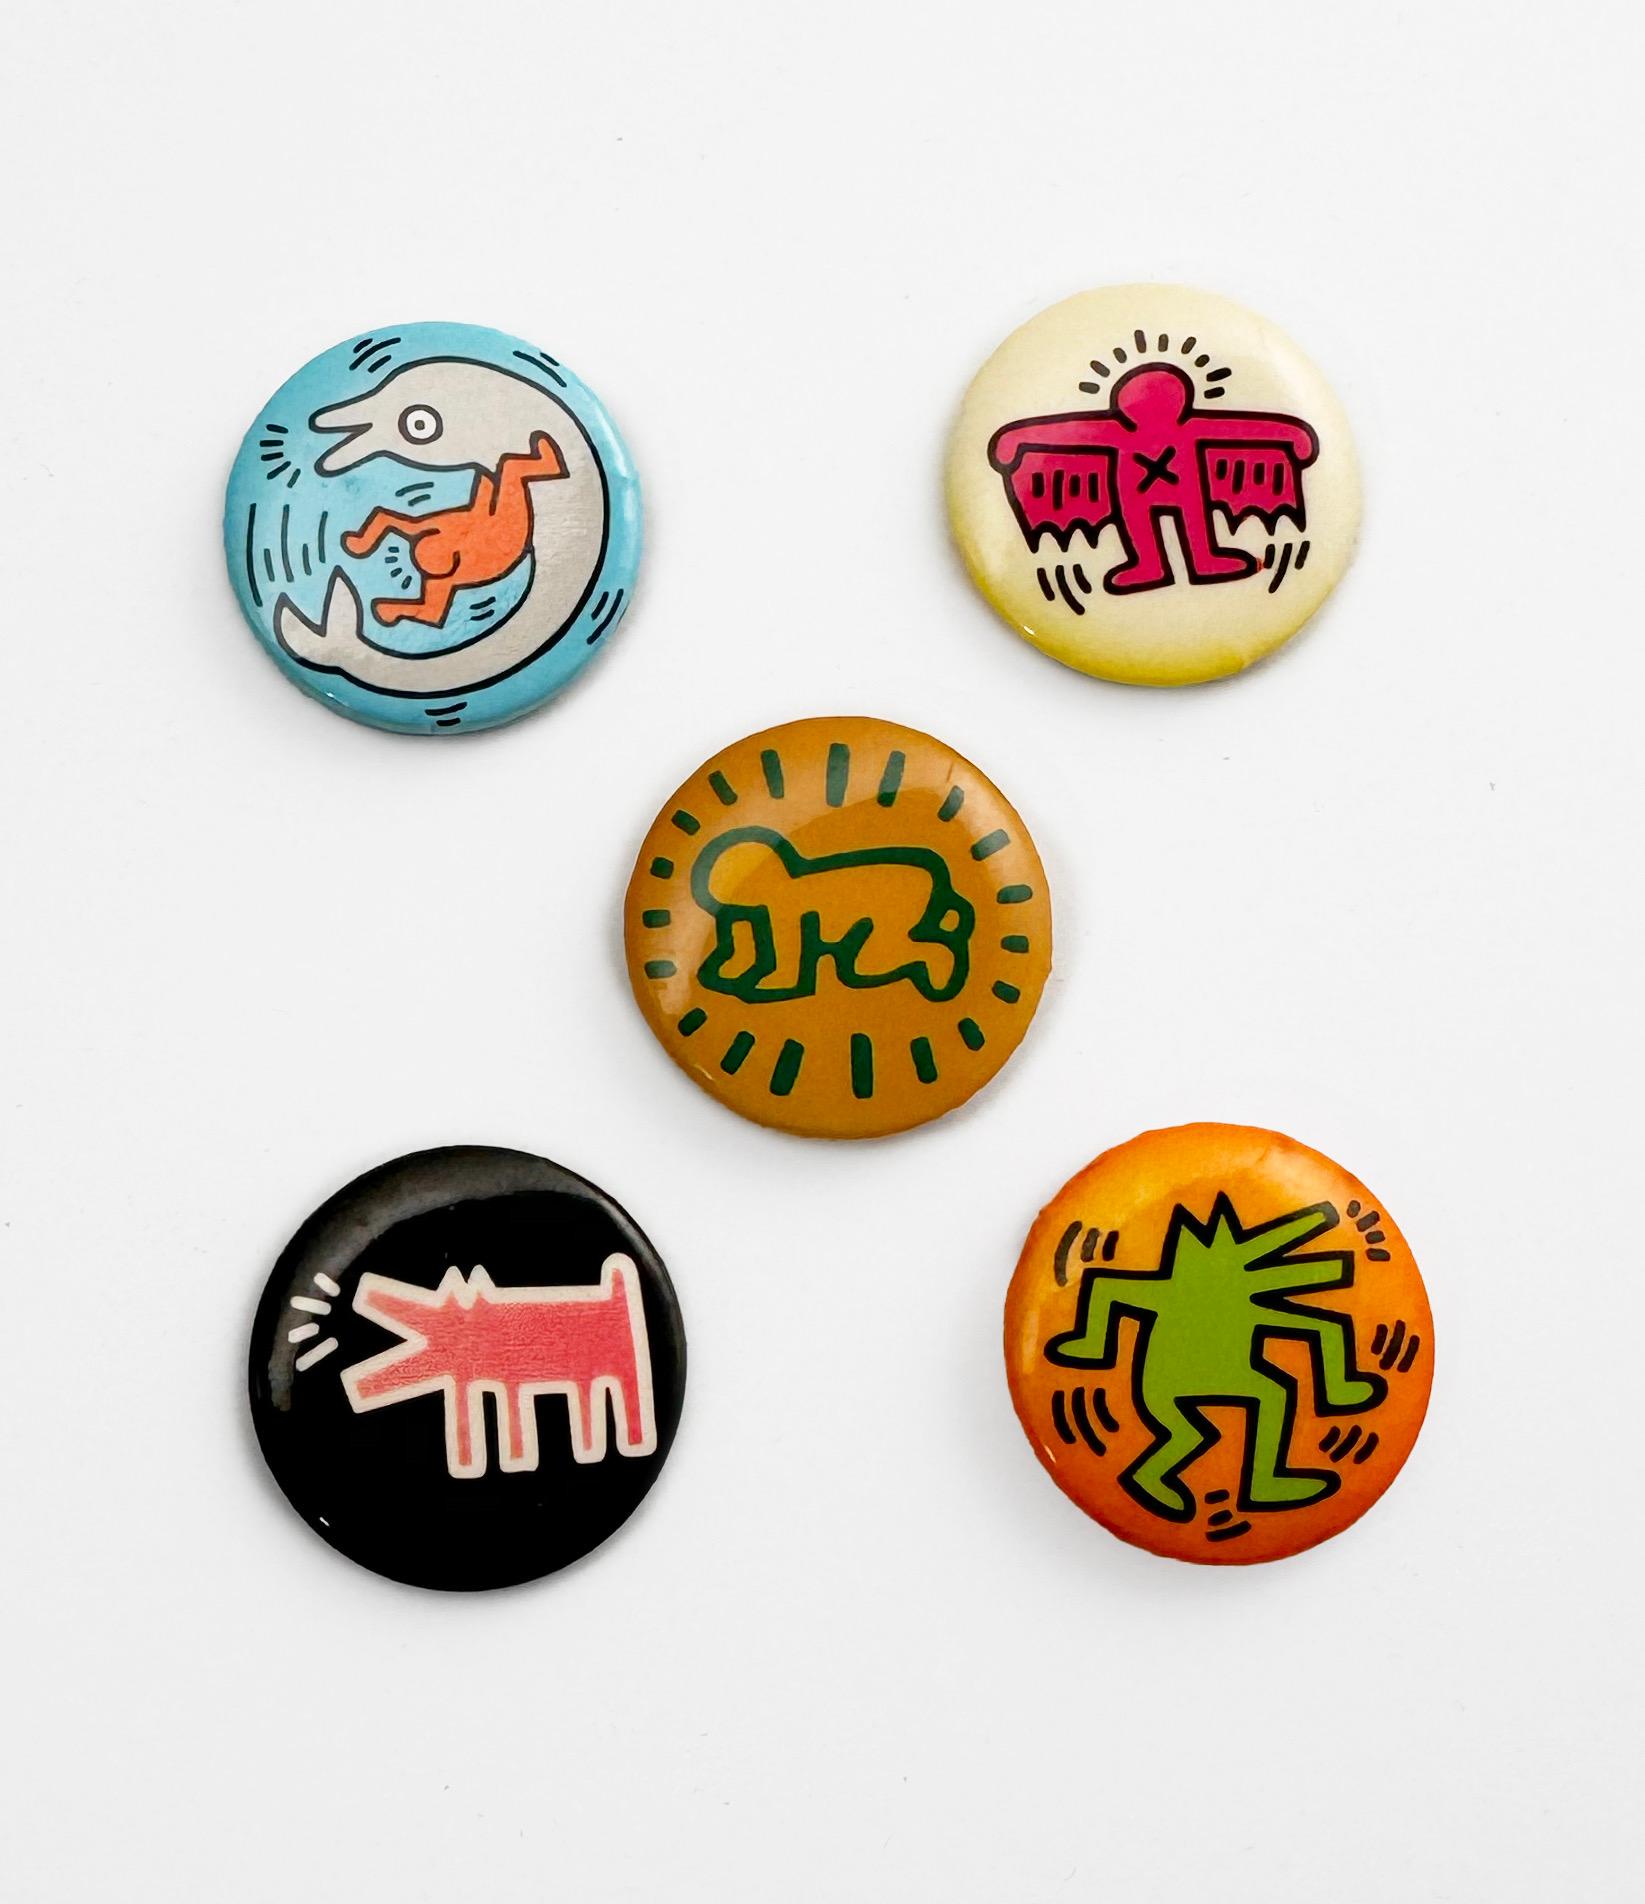 Un ensemble de 5 pins de revers vintage Keith Haring Pop Shop, datant de 1986-1987 et représentant certaines des images les plus emblématiques de l'artiste.

Original vers le milieu des années 1980 (pas de reproductions ultérieures) 
Petites